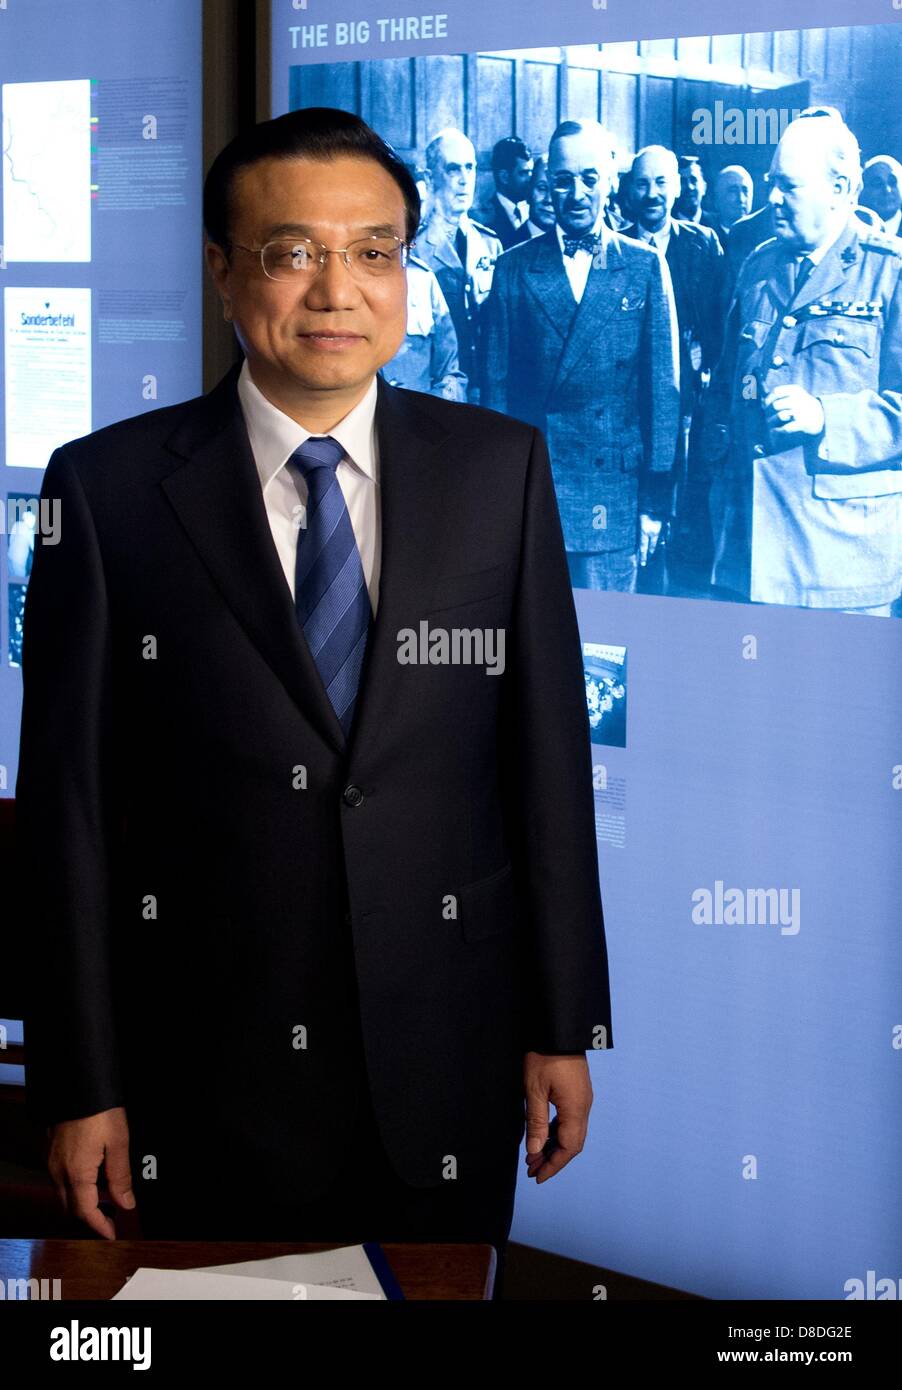 Der Ministerpräsident von China, Li Keqiang, steht am 26.05.2013 in der Gedenkstätte Cecilienhof in Potsdam (Brandenburg) neben einem Foto der Unterzeichner des Potsdamer Abkommens. Foto: Soeren Stache/dpa Stock Photo